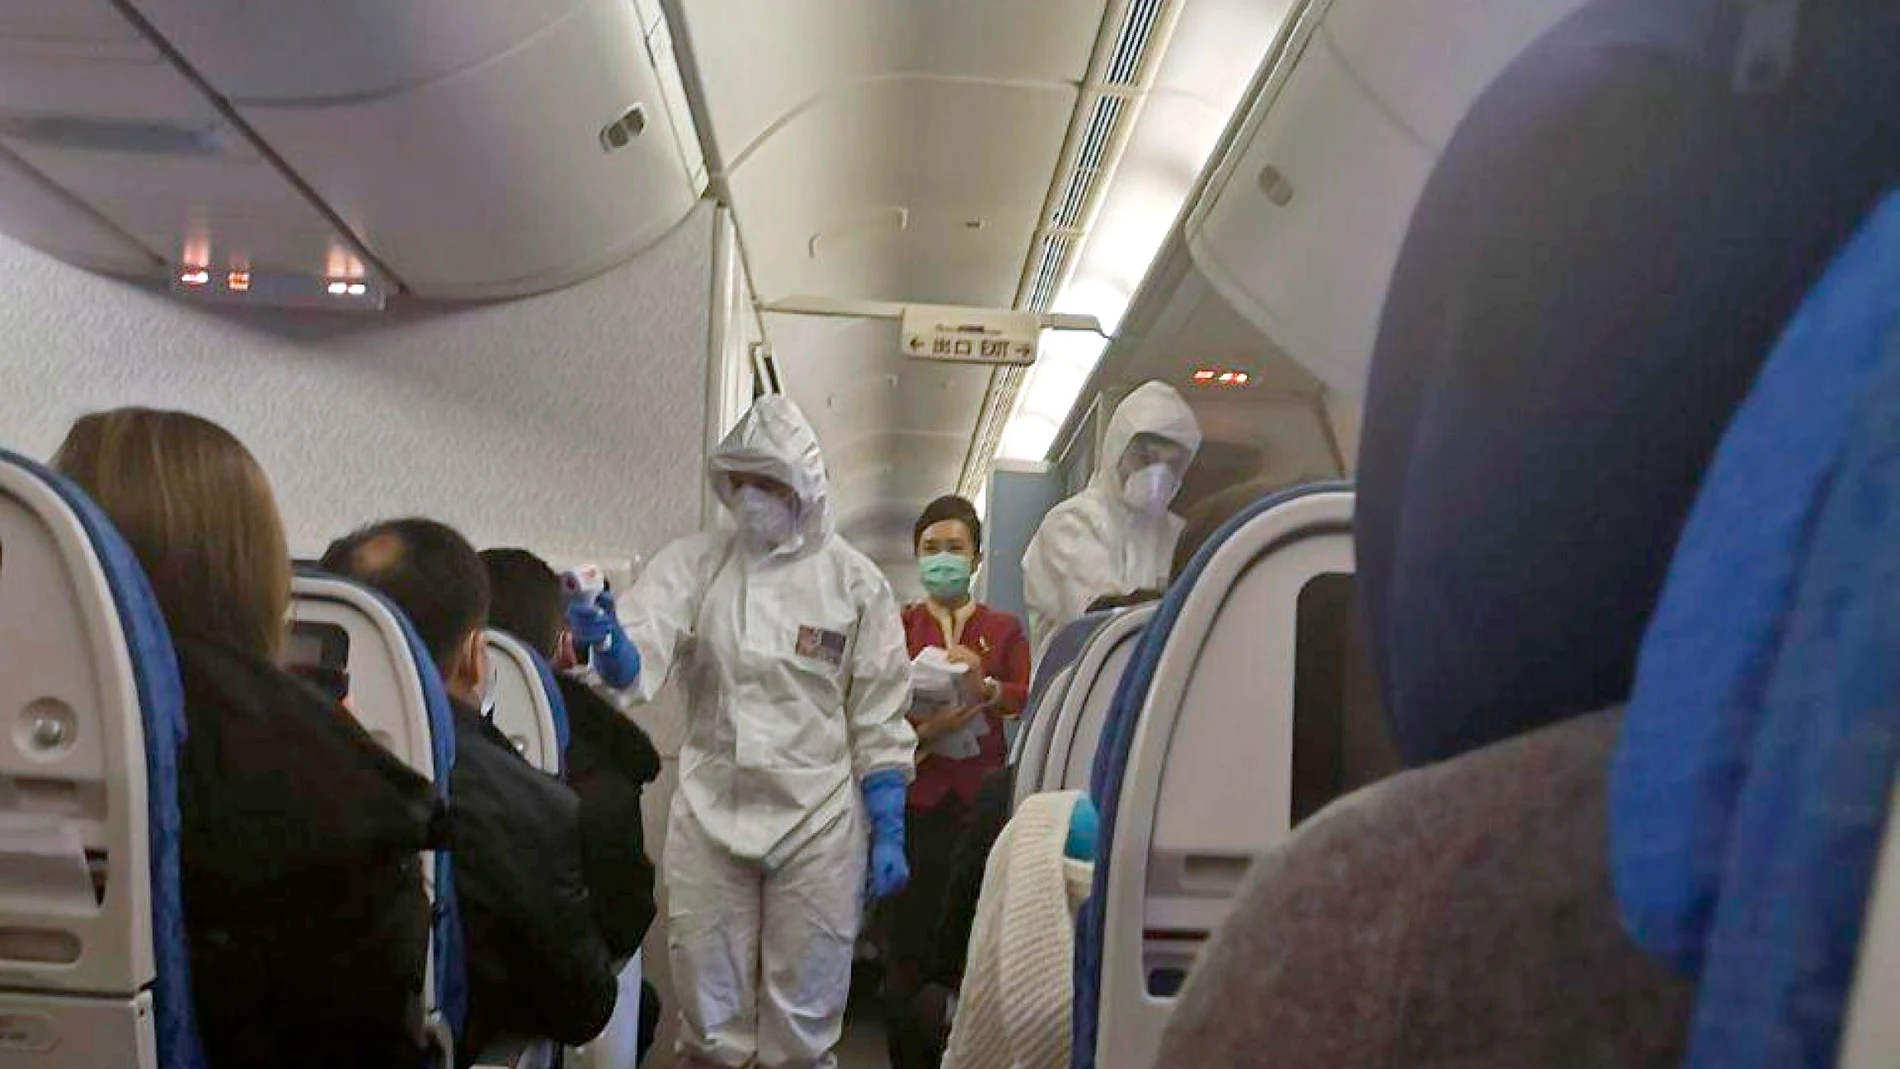  Coronavirus: controles de fiebre a los pasajeros en el aeropuerto de Milán